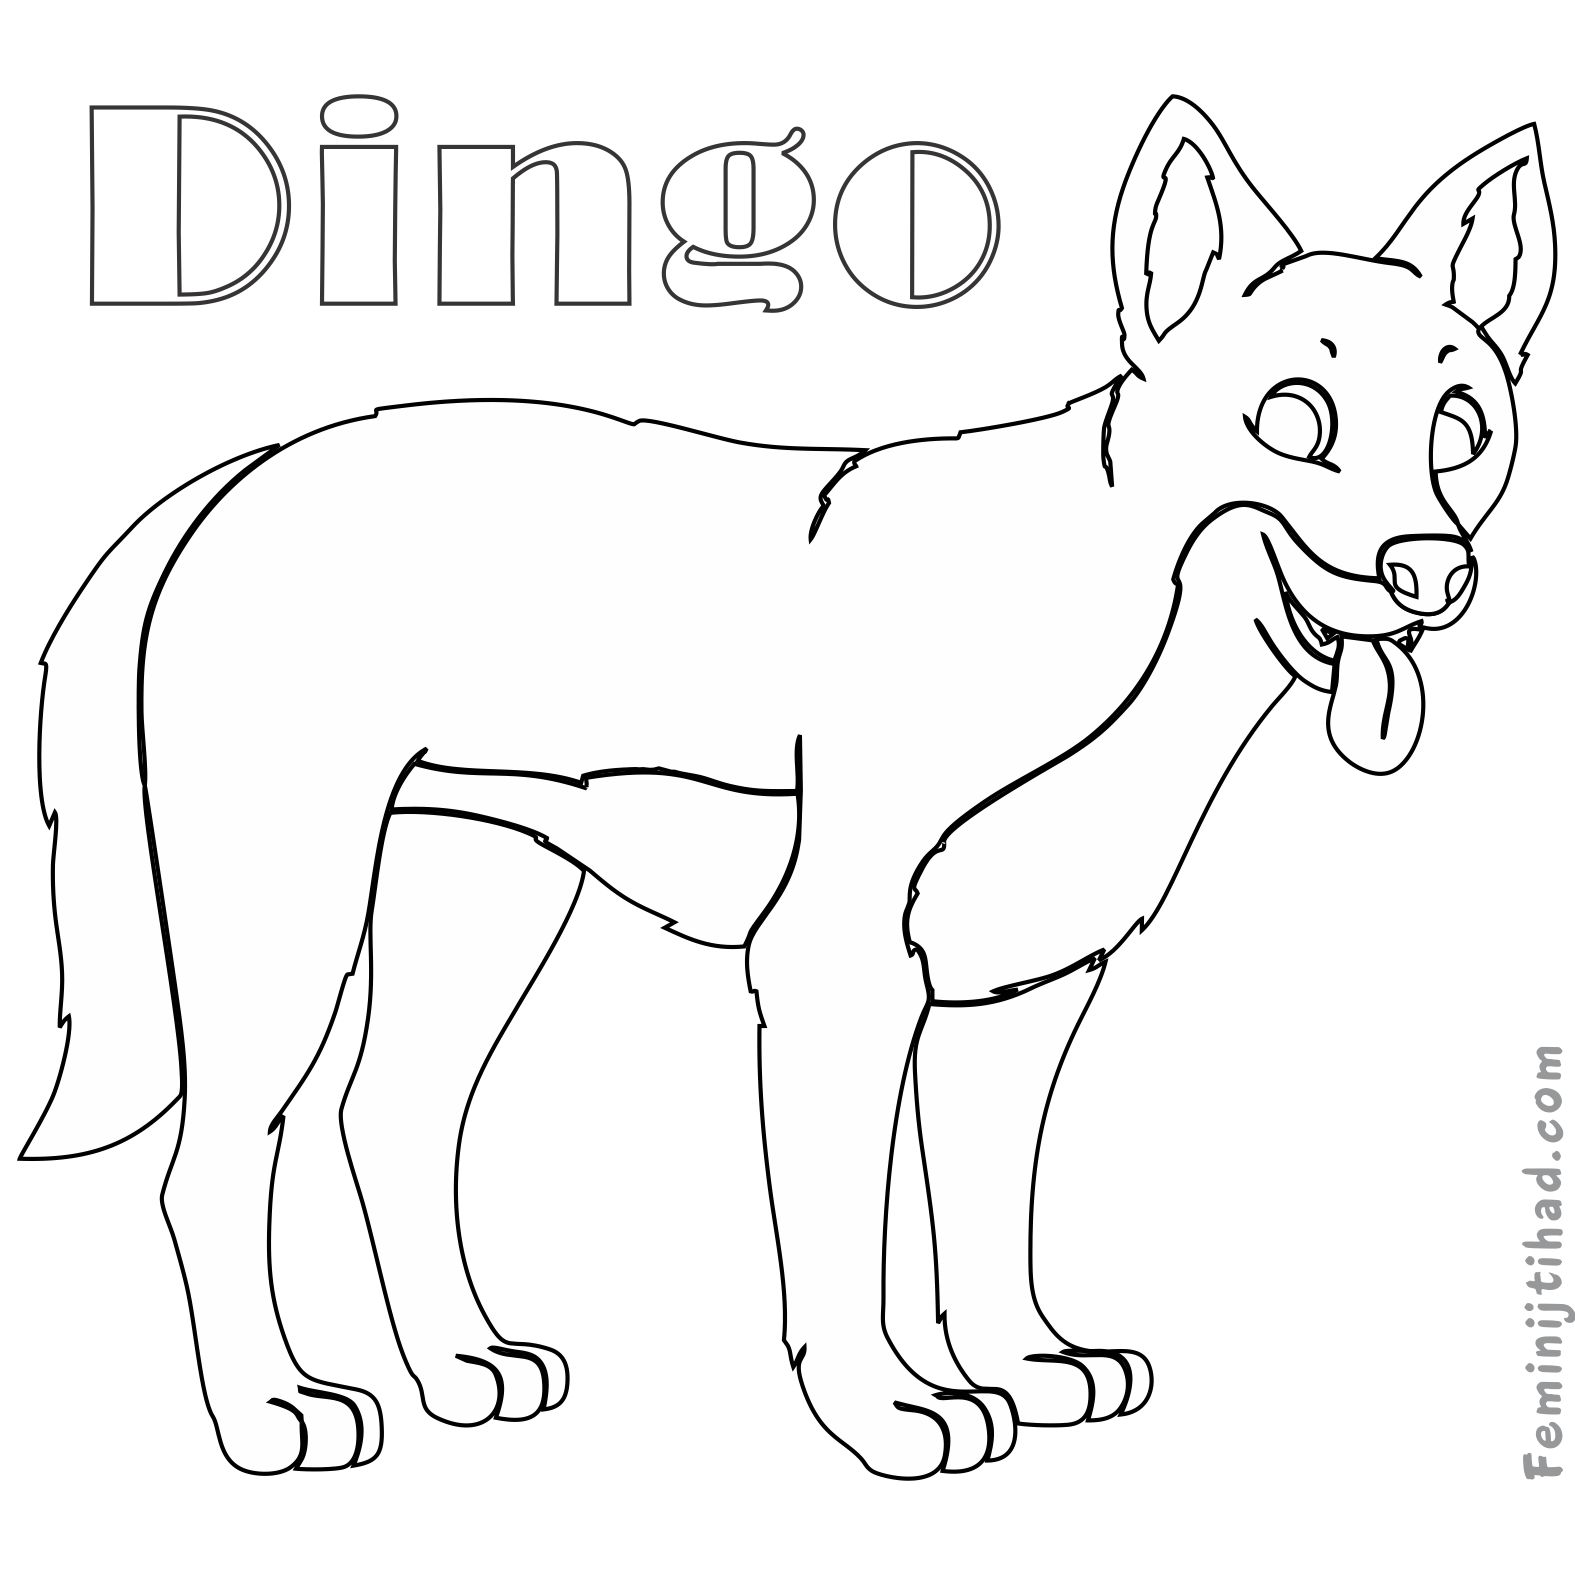 dingo coloring pages print